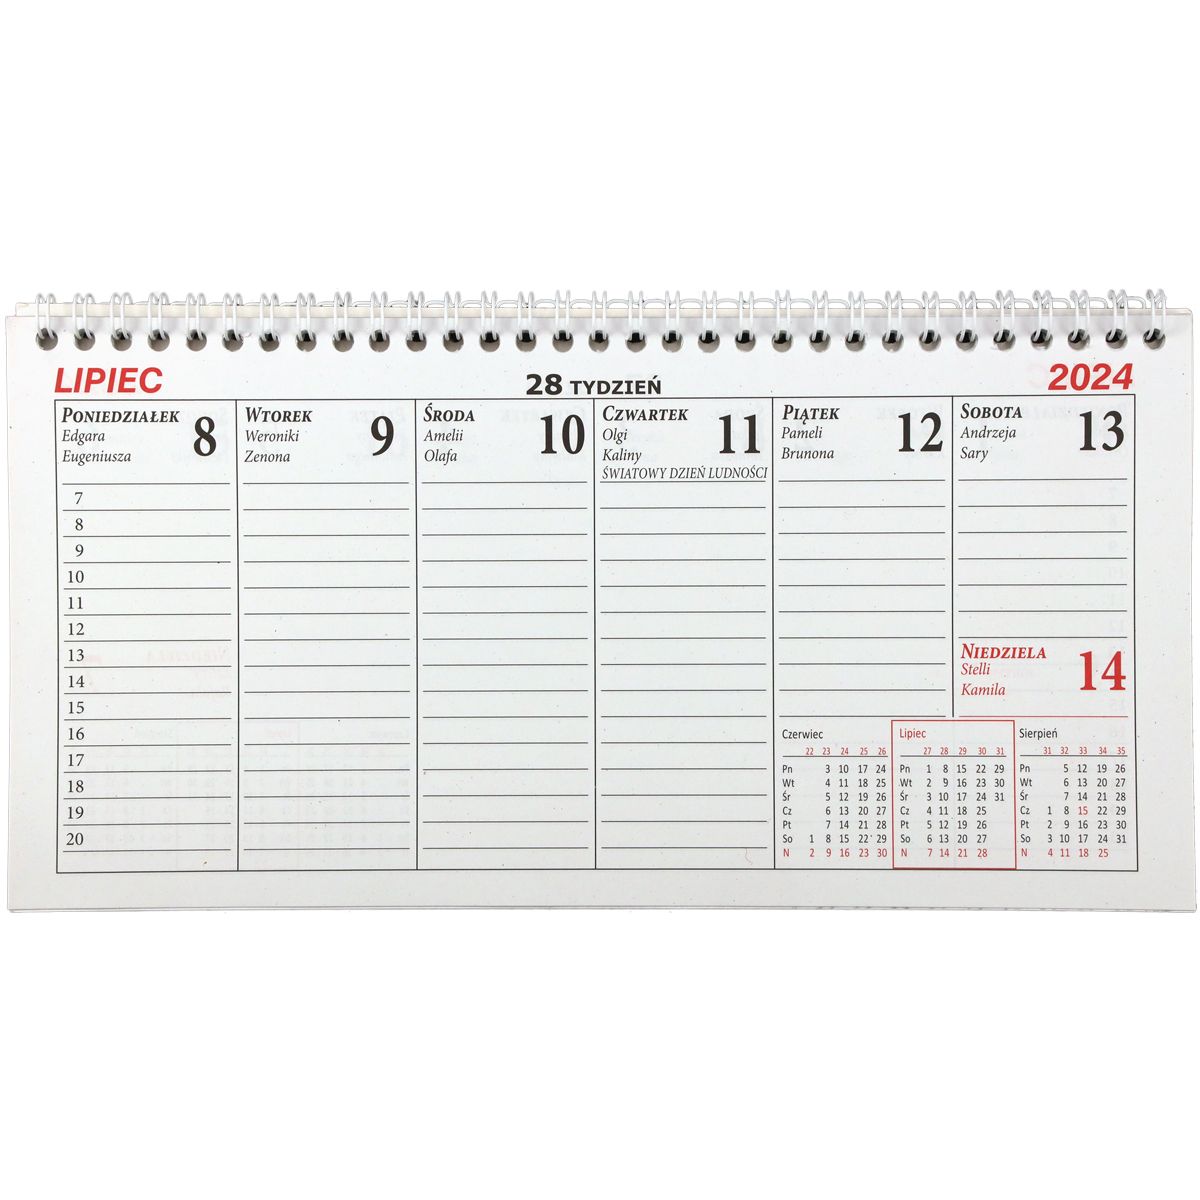 Kalendarz biurkowy Beskidy EUROPA biurkowy leżący 135mm x 270mm